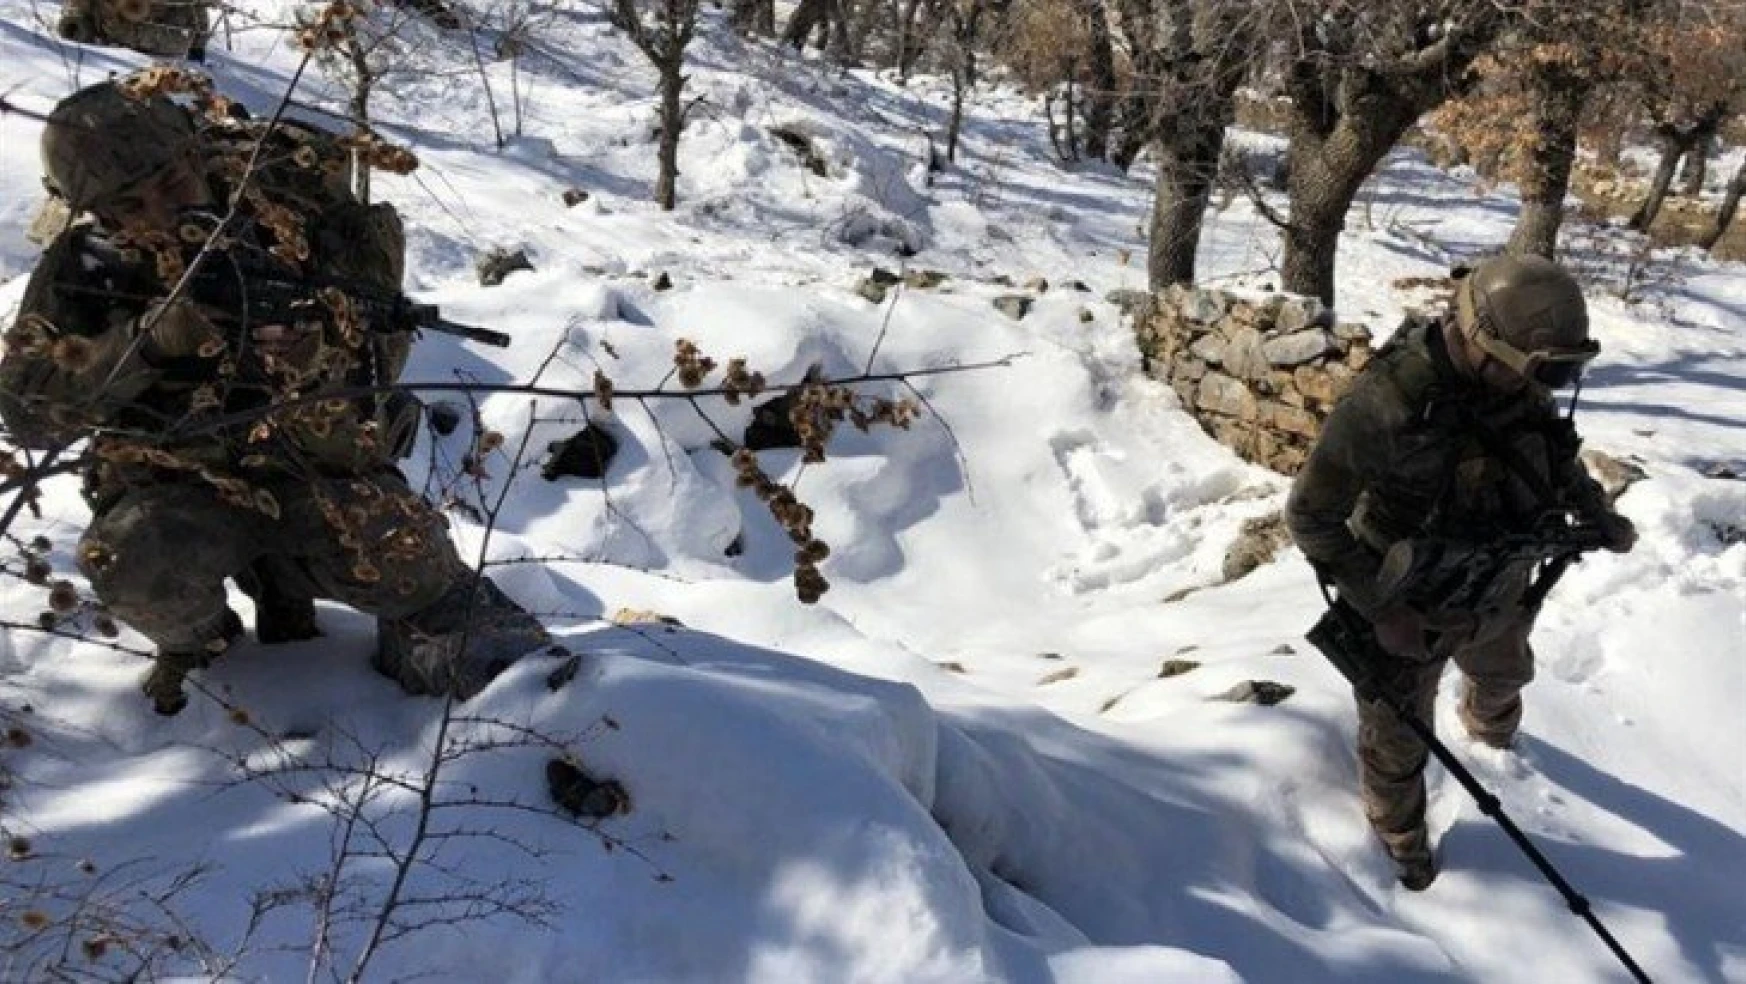 Bitlis ve Siirt İllerinde Eren-11 Sehi Ormanları Operasyonu Başlatıldı